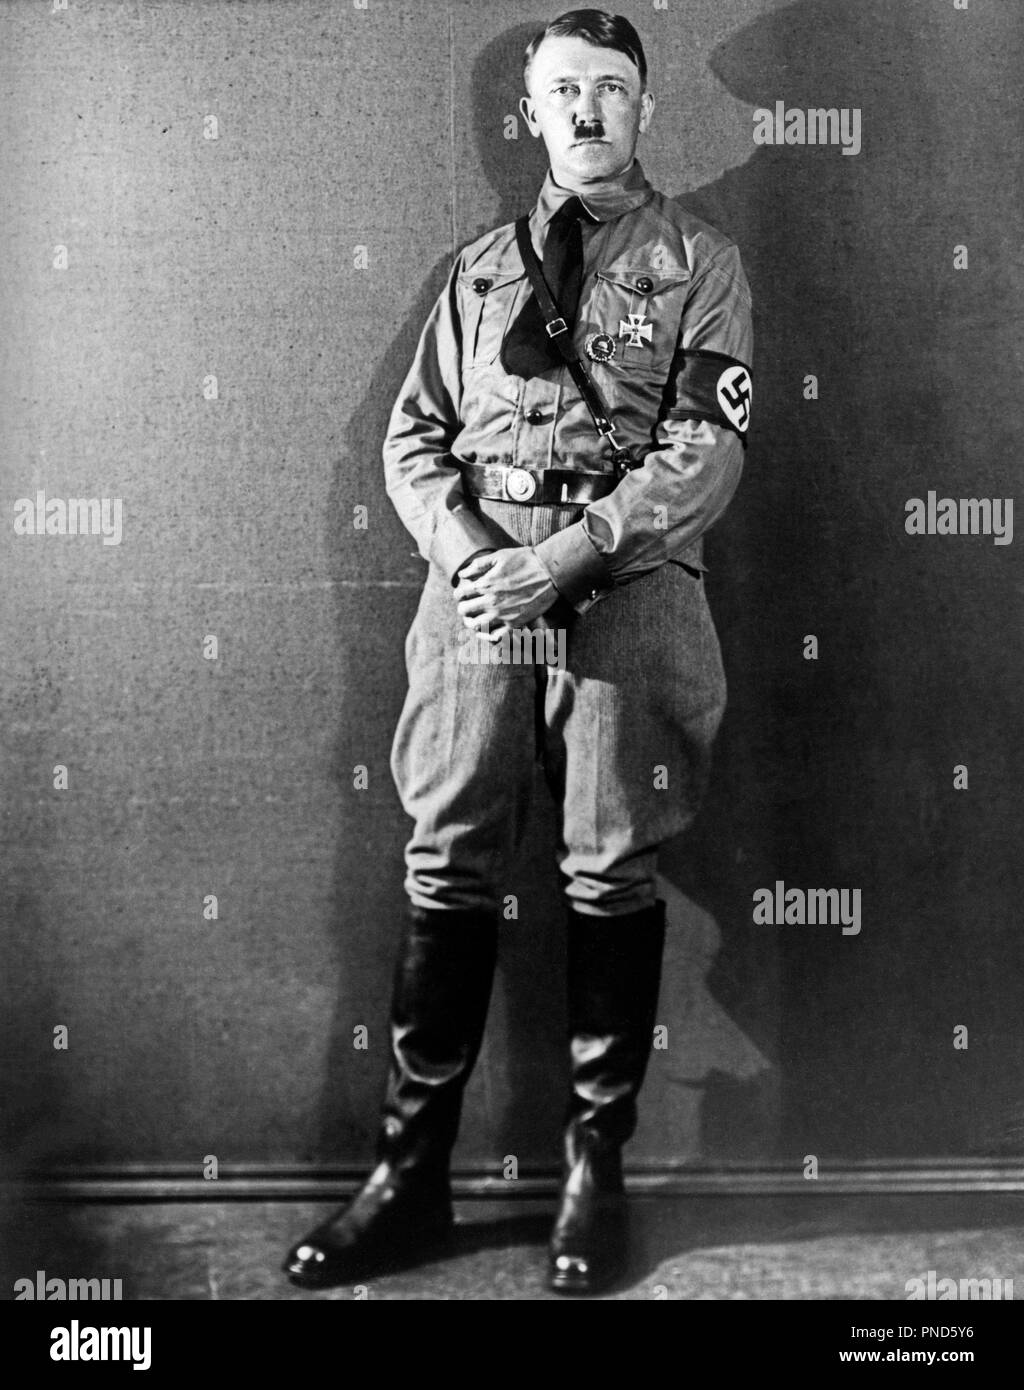 1920er Jahre 1930er Jahre voller stehenden Figur ADOLF HITLER DER FUHRER braunes Hemd tragen Uniform mit HAKENKREUZ ARM BAND AUF KAMERA-q72075 CPC 001 HARS PERSÖNLICHKEIT BERÜHMTEN FÜHRUNG MONSTER WELTKRIEG DIKTATOR HAKENKREUZ POLITIK ADOLF der berüchtigten Mörder NAZI-FASCHISTISCHEN ADOLF HITLER WIDERSPRÜCHLICHE DER FUHRER FUHRER VÖLKERMORD Mitte - Mitte - erwachsenen Mann MORD PERSÖNLICHKEITEN SELBSTMORD KÄMPFEN SCHWARZ UND WEISS KAUKASISCHEN ETHNIE berühmte Person ALTMODISCH Stockfoto